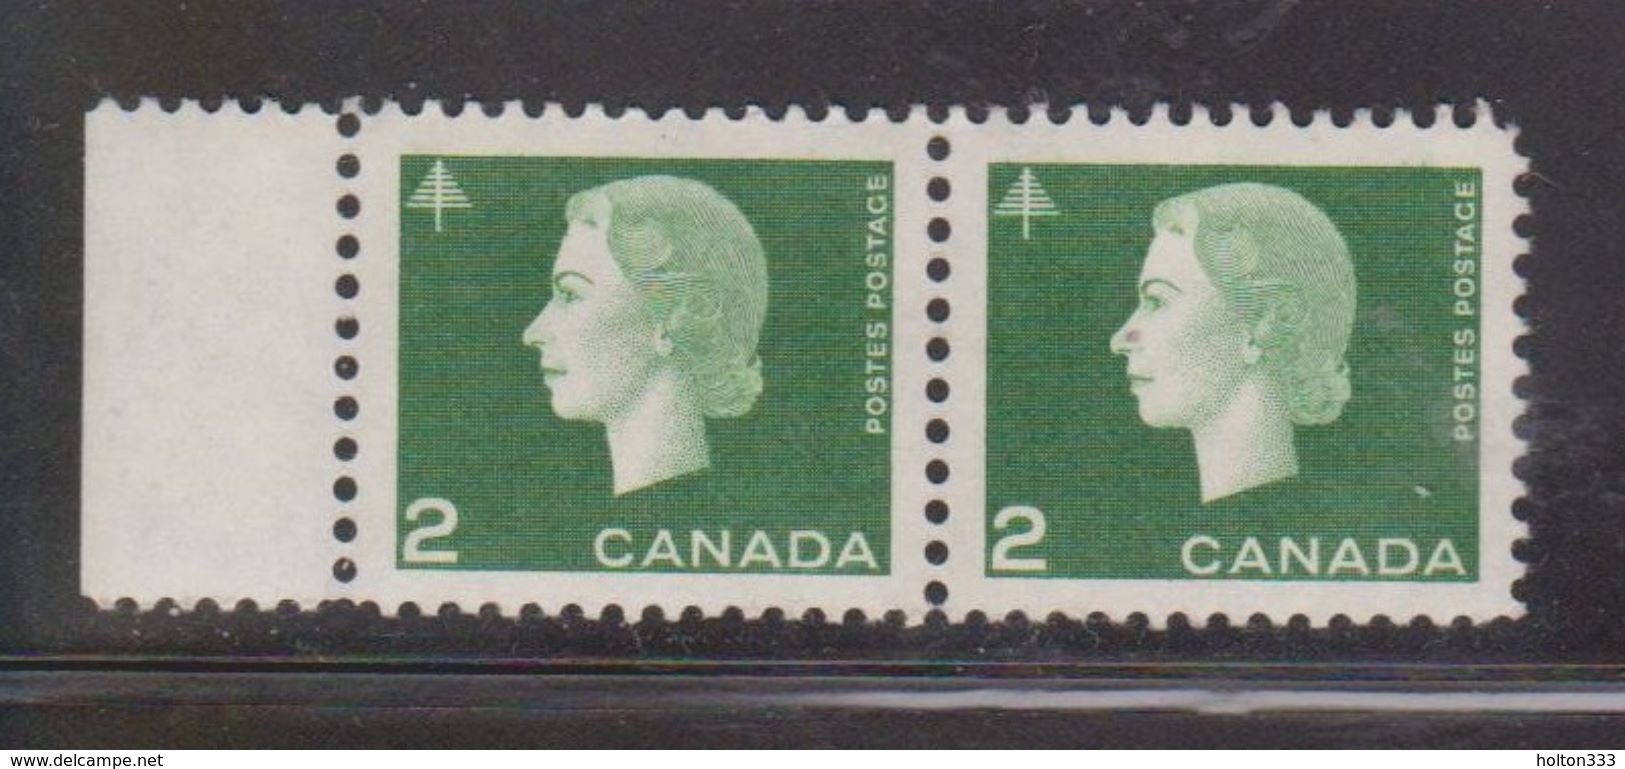 CANADA Scott # 402 MNH - QEII Definitive Pair - Unused Stamps